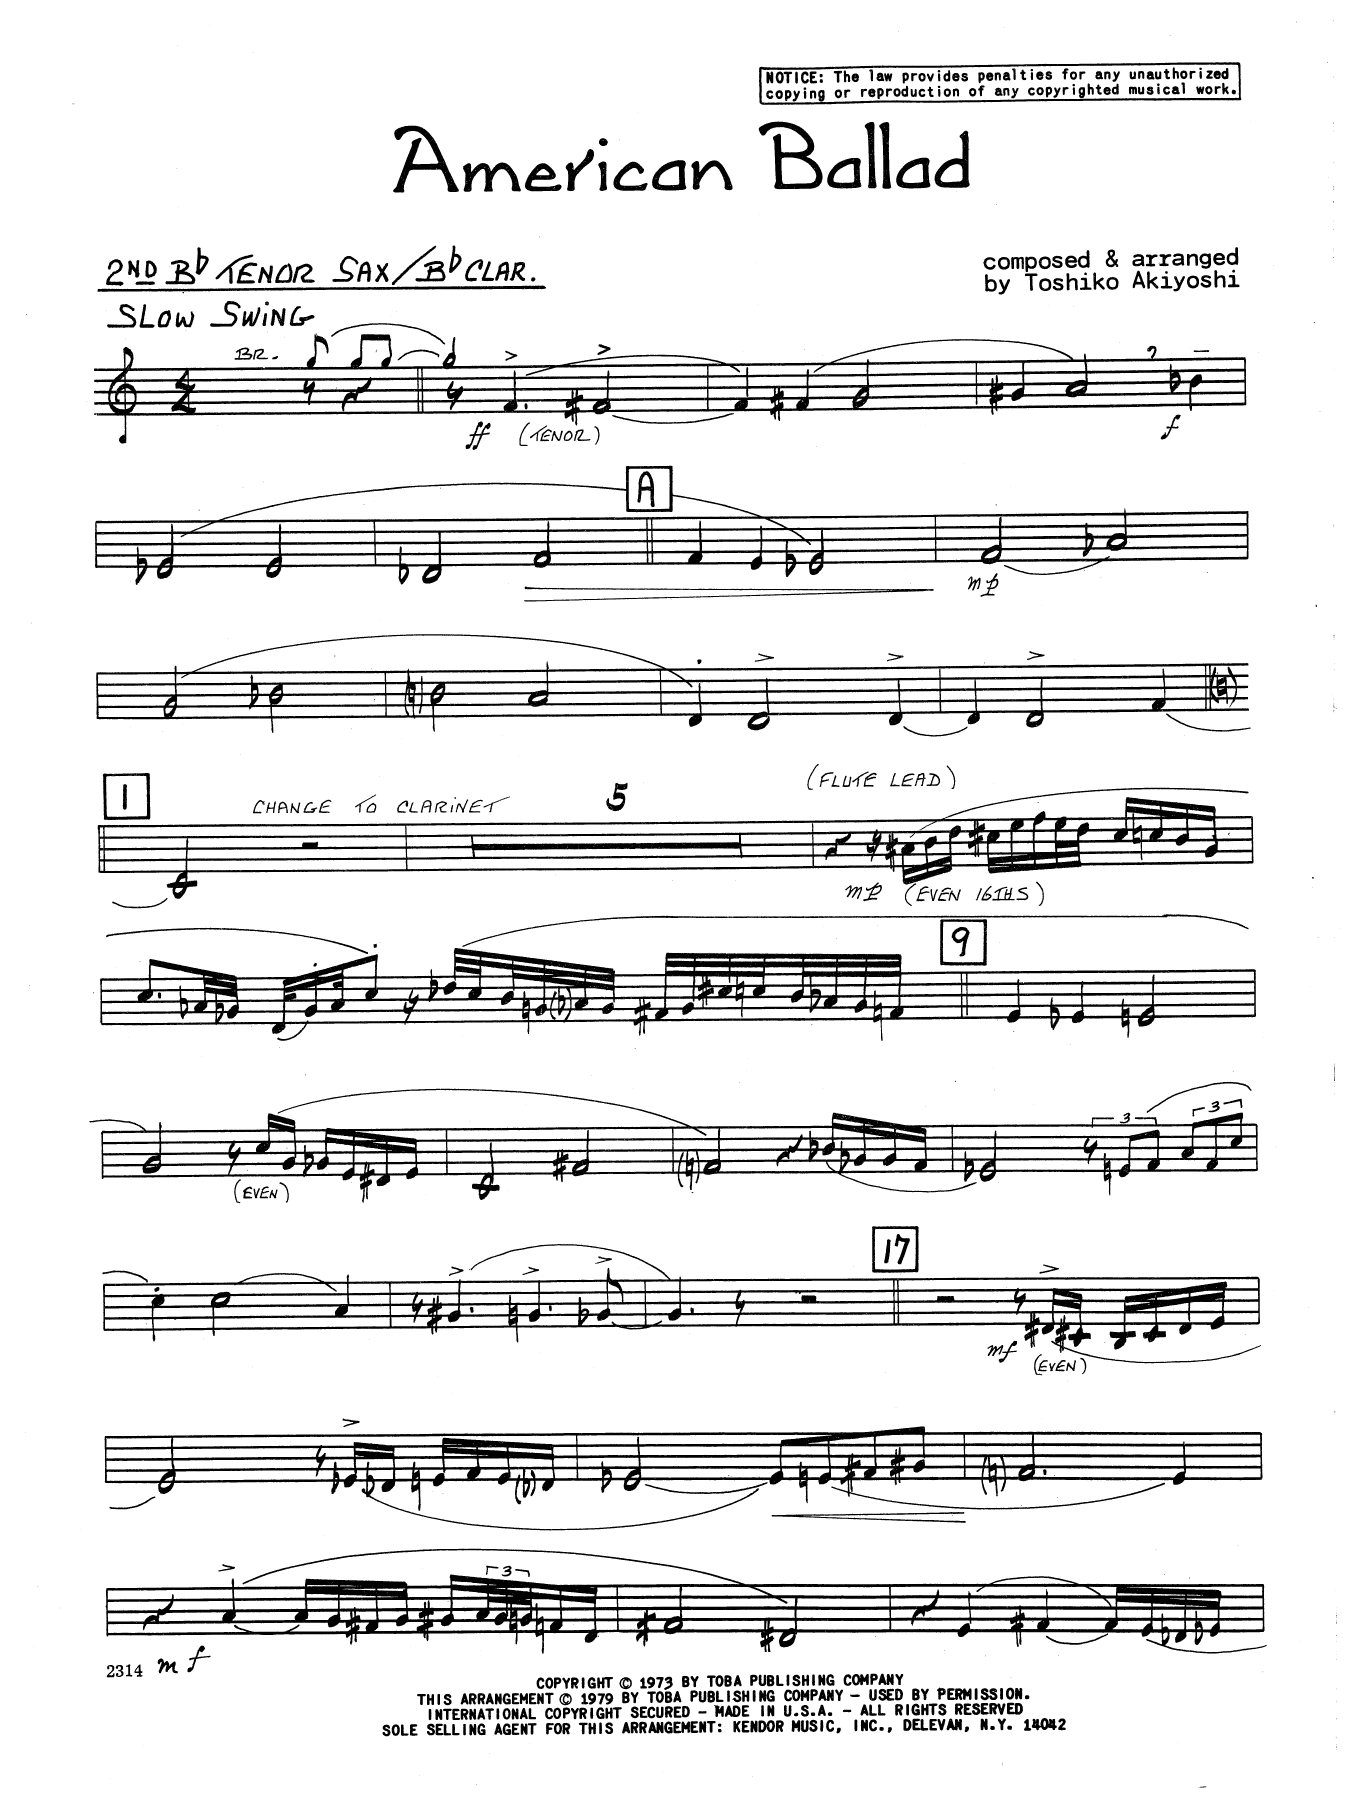 Download Toshiko Akiyoshi American Ballad - 2nd Bb Tenor Saxophon Sheet Music